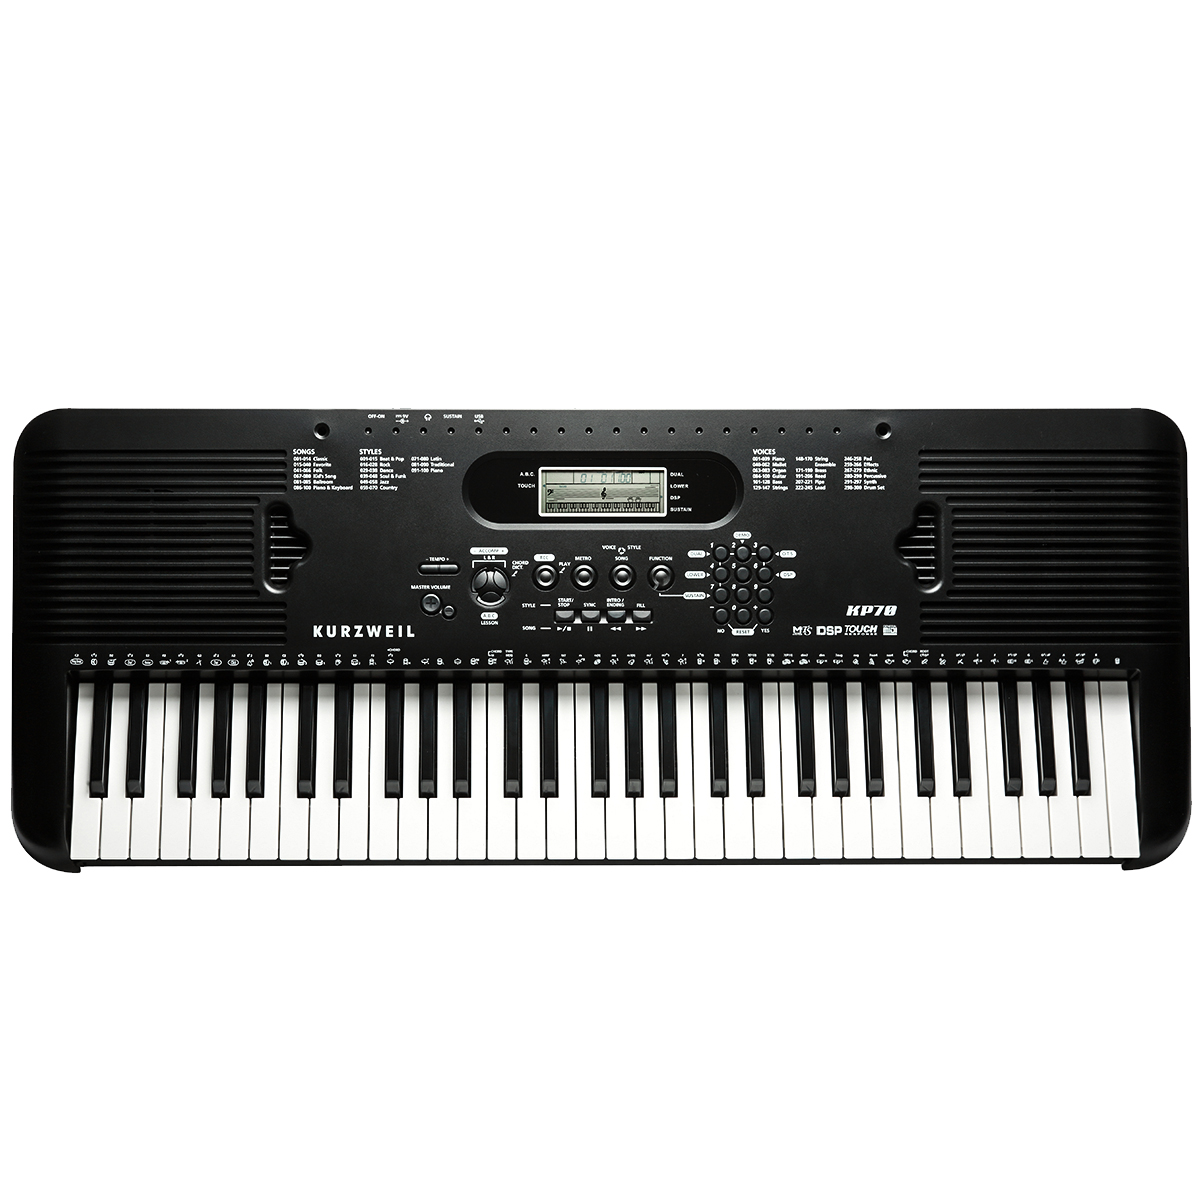 KURZWEIL KP70LB: Portable Arranger Keyboard